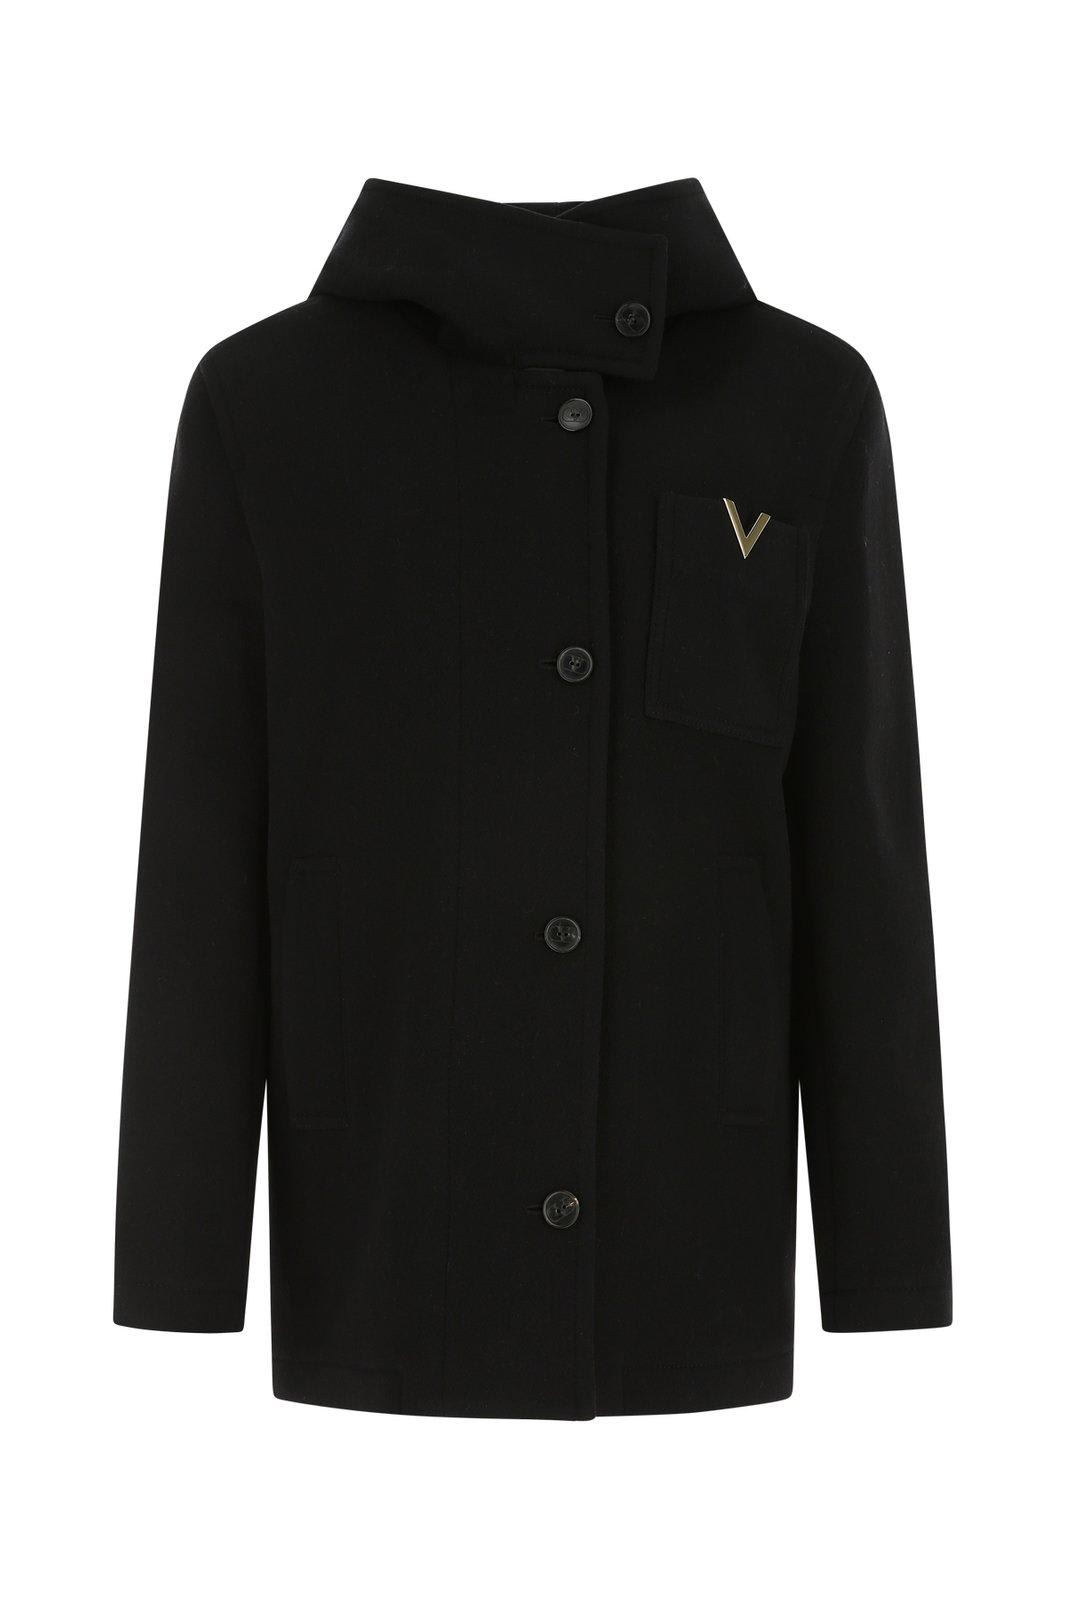 Valentino Vlogo Signature Long-sleeved Coat